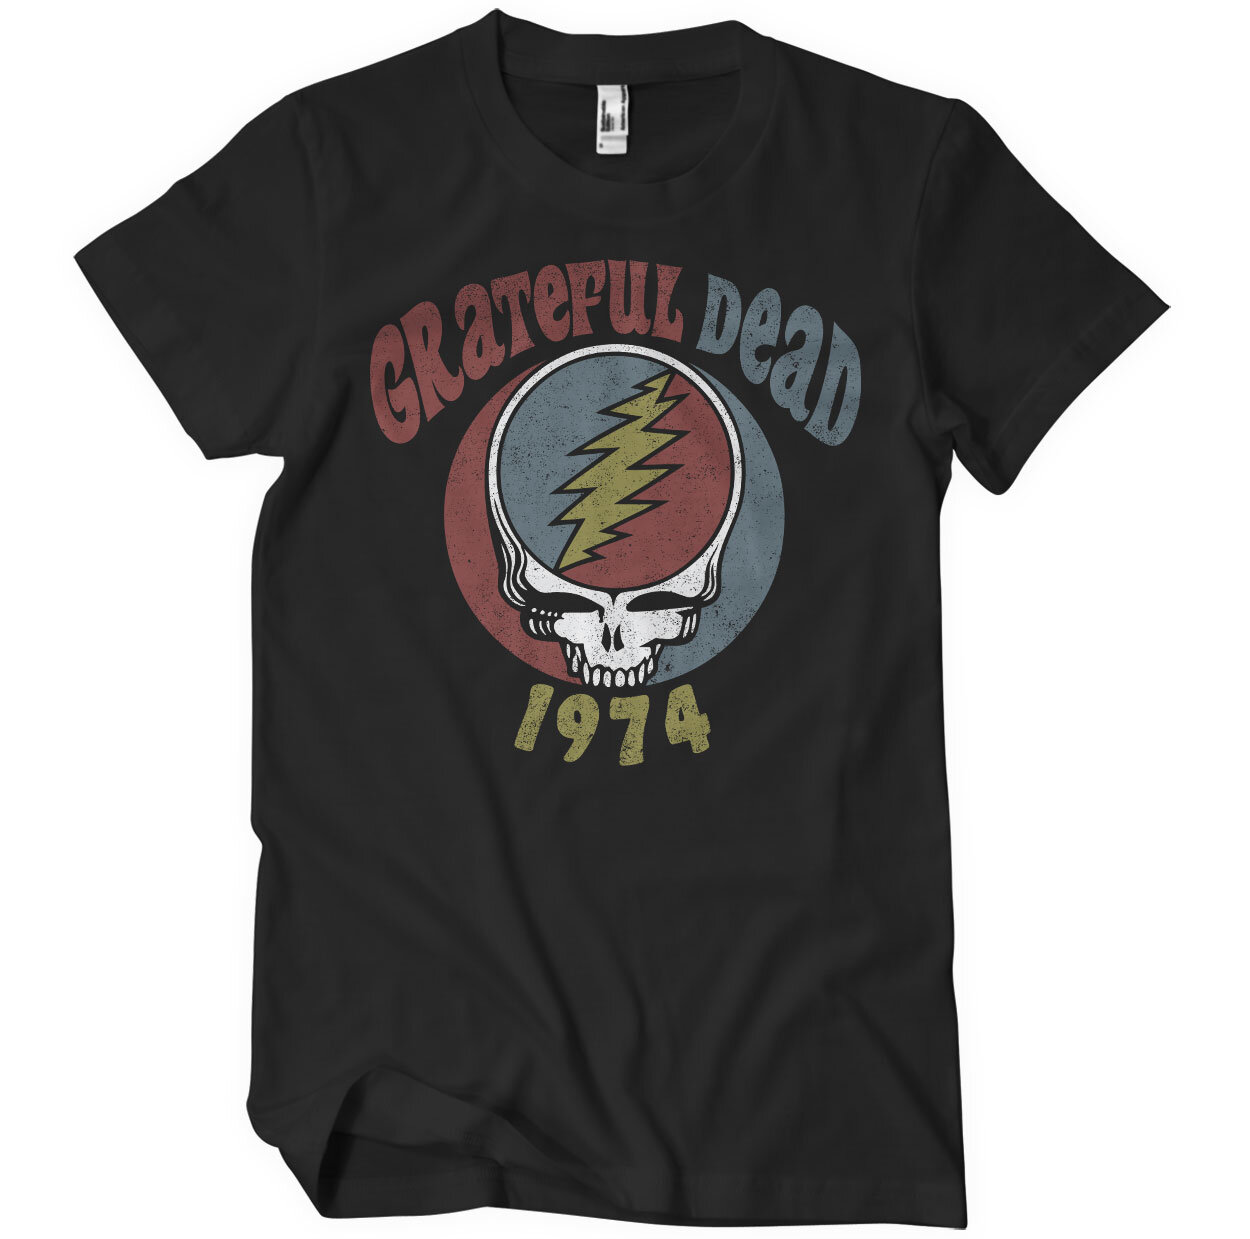 Grateful Dead 1974 Tour T-Shirt